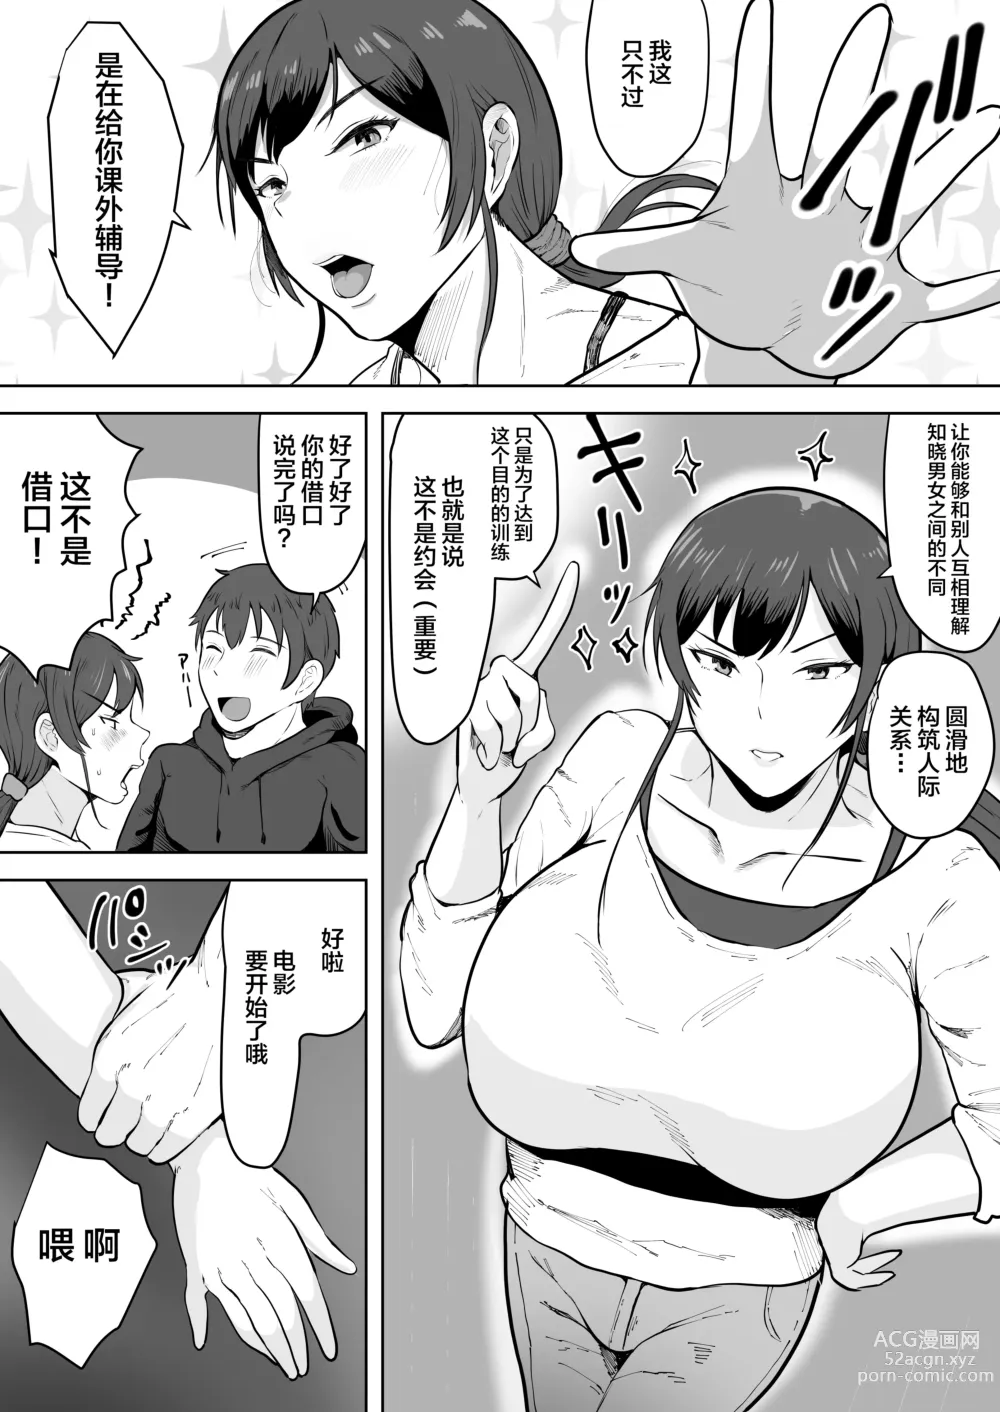 Page 10 of doujinshi Hoken no Sensei Shinobu 37-sai